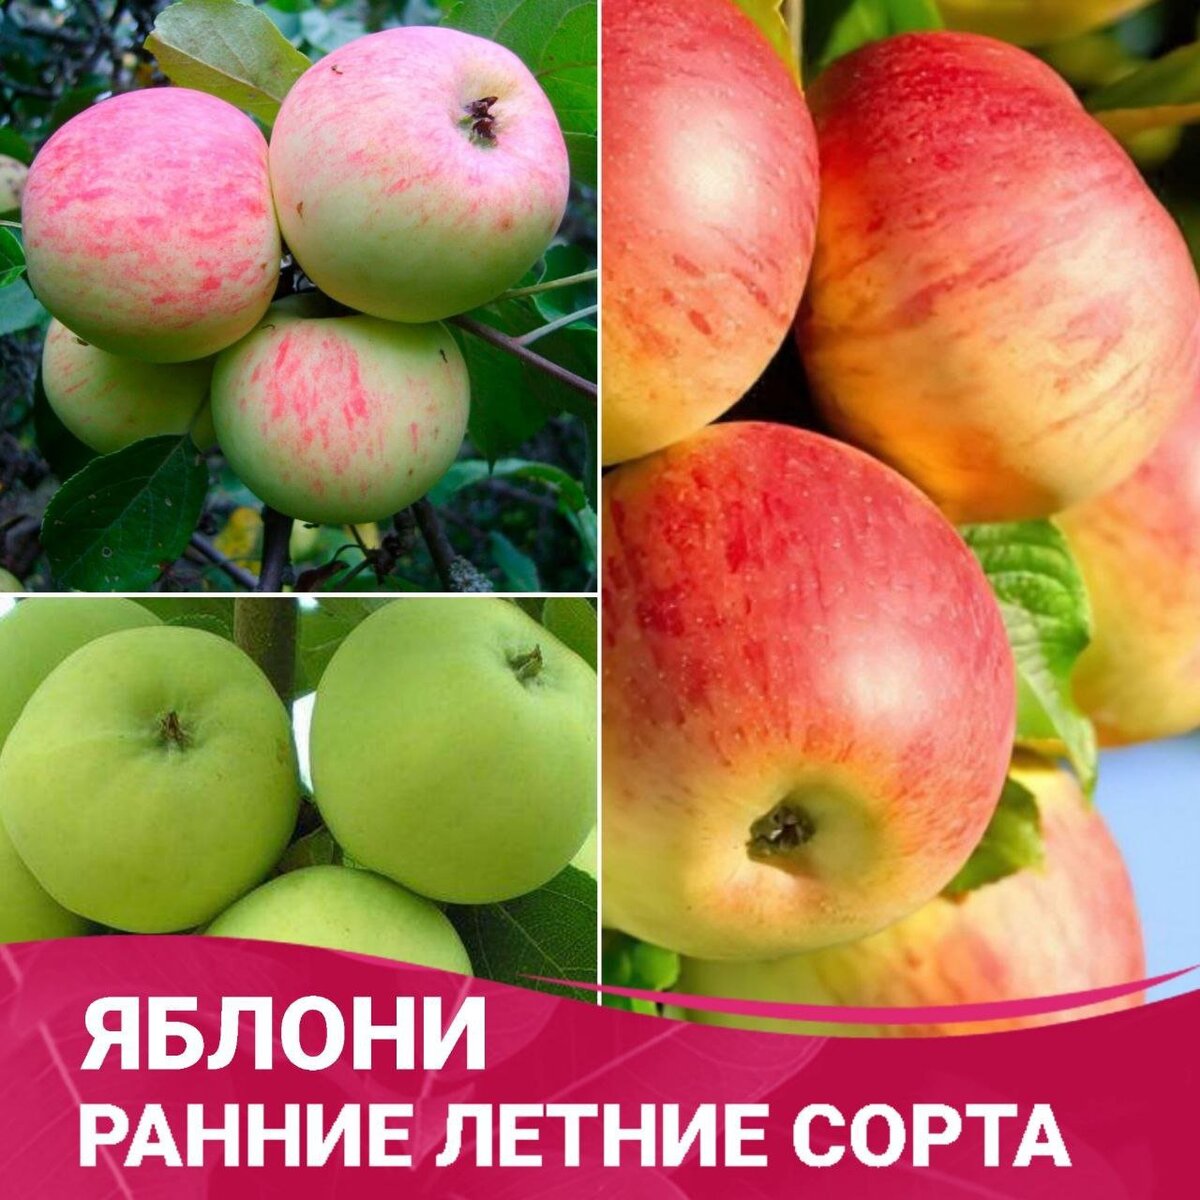 Ранние летние сорта яблонь - открытие ароматных и сочных фруктовых сокровищ🍏🍎🍏